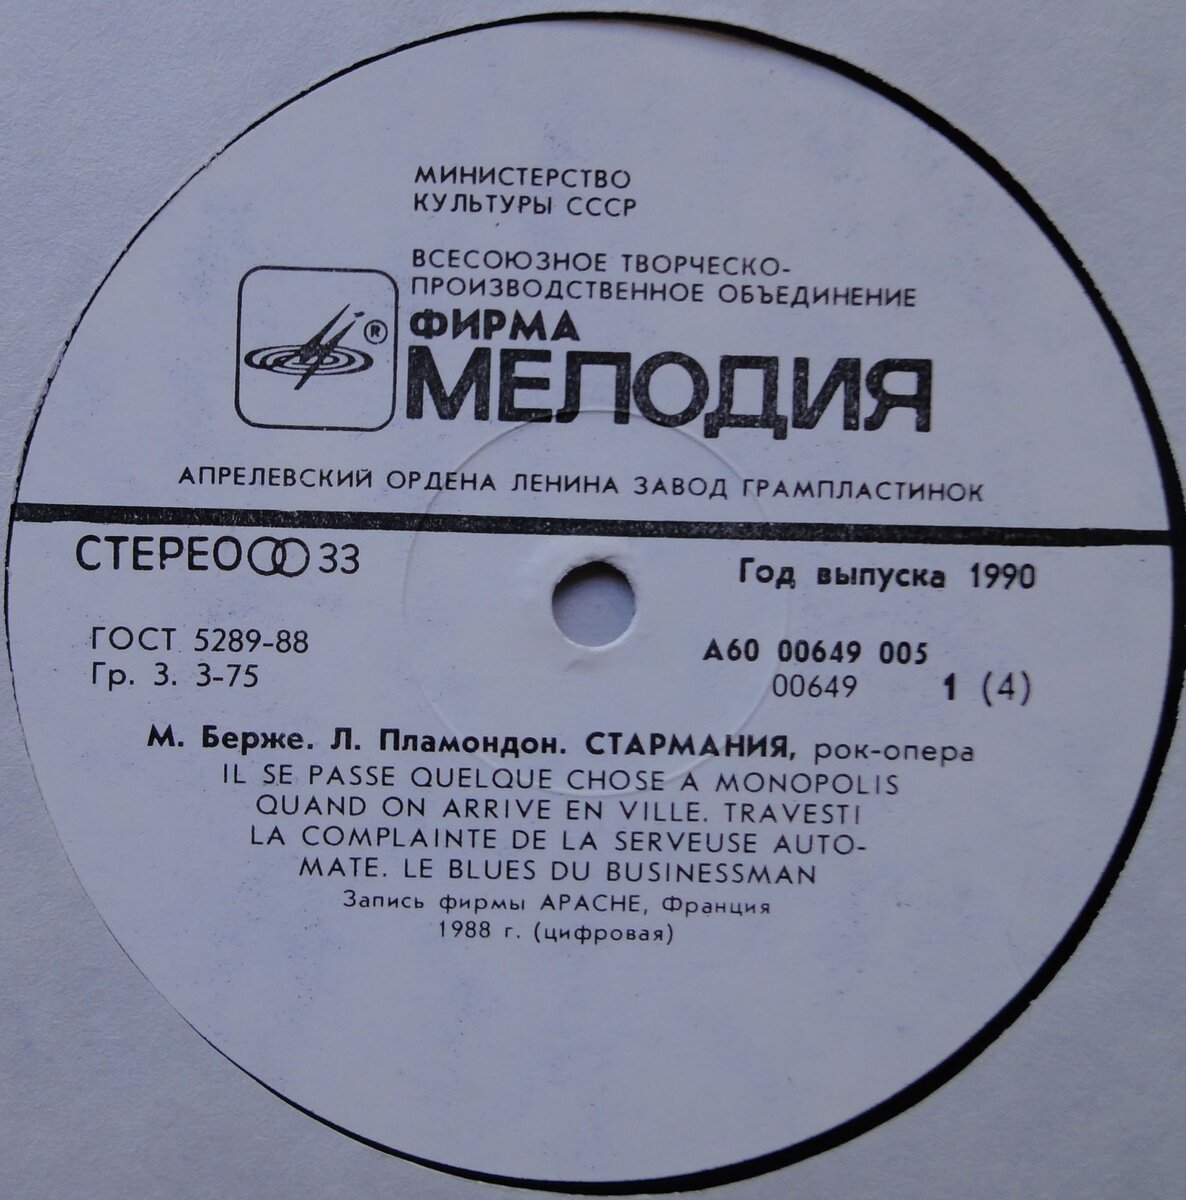 Vinyl, 2xLP, фирма "Мелодия", Апрелевский завод, 1990 год, 50000 экз. Фото с сайта https://auction.ru/